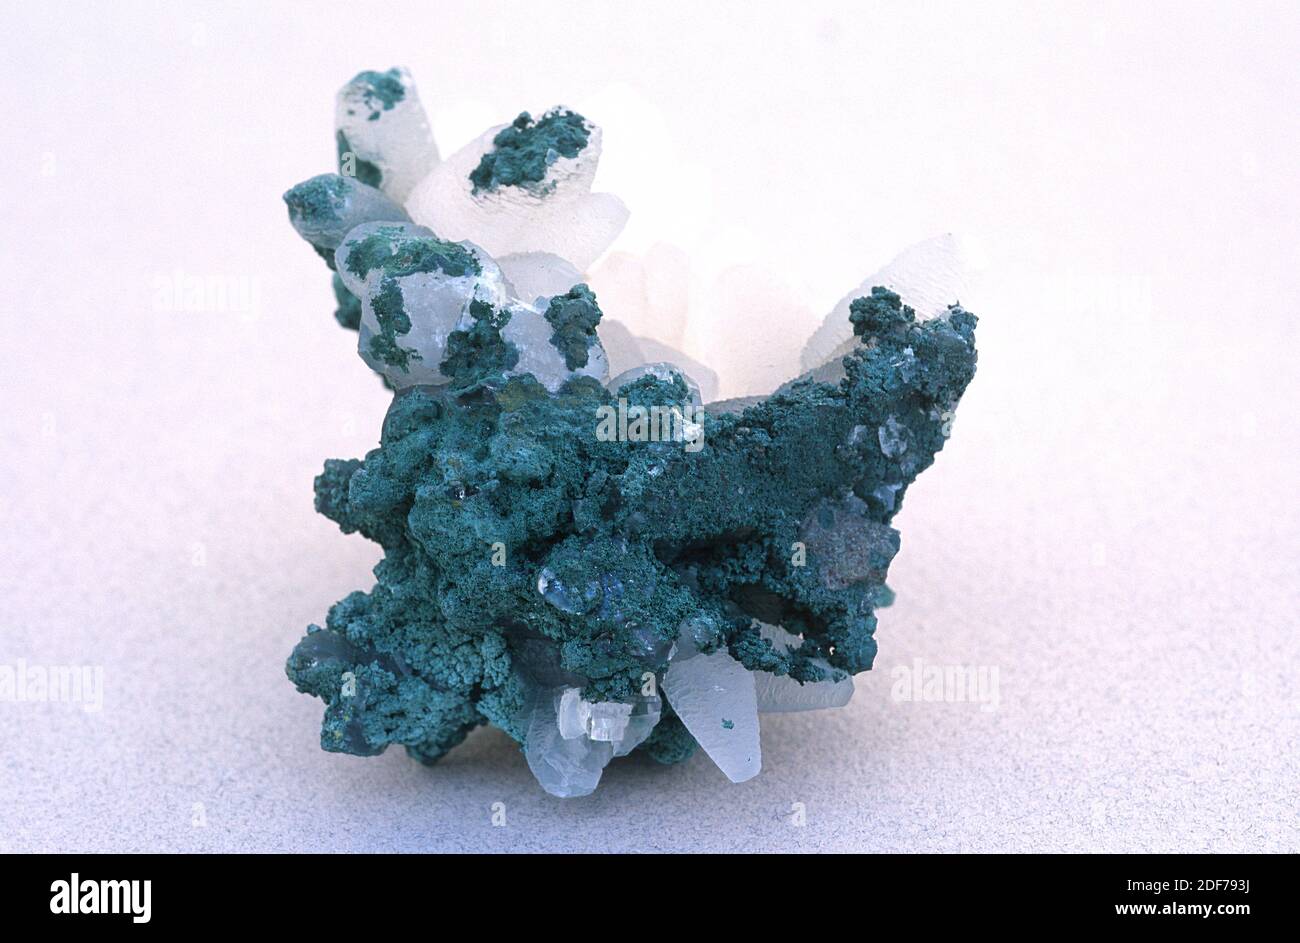 La montmorillonita es un mineral de silicato del grupo de la smectita. Muestra (verde) con cristales de apophyllita (transparente). Foto de stock